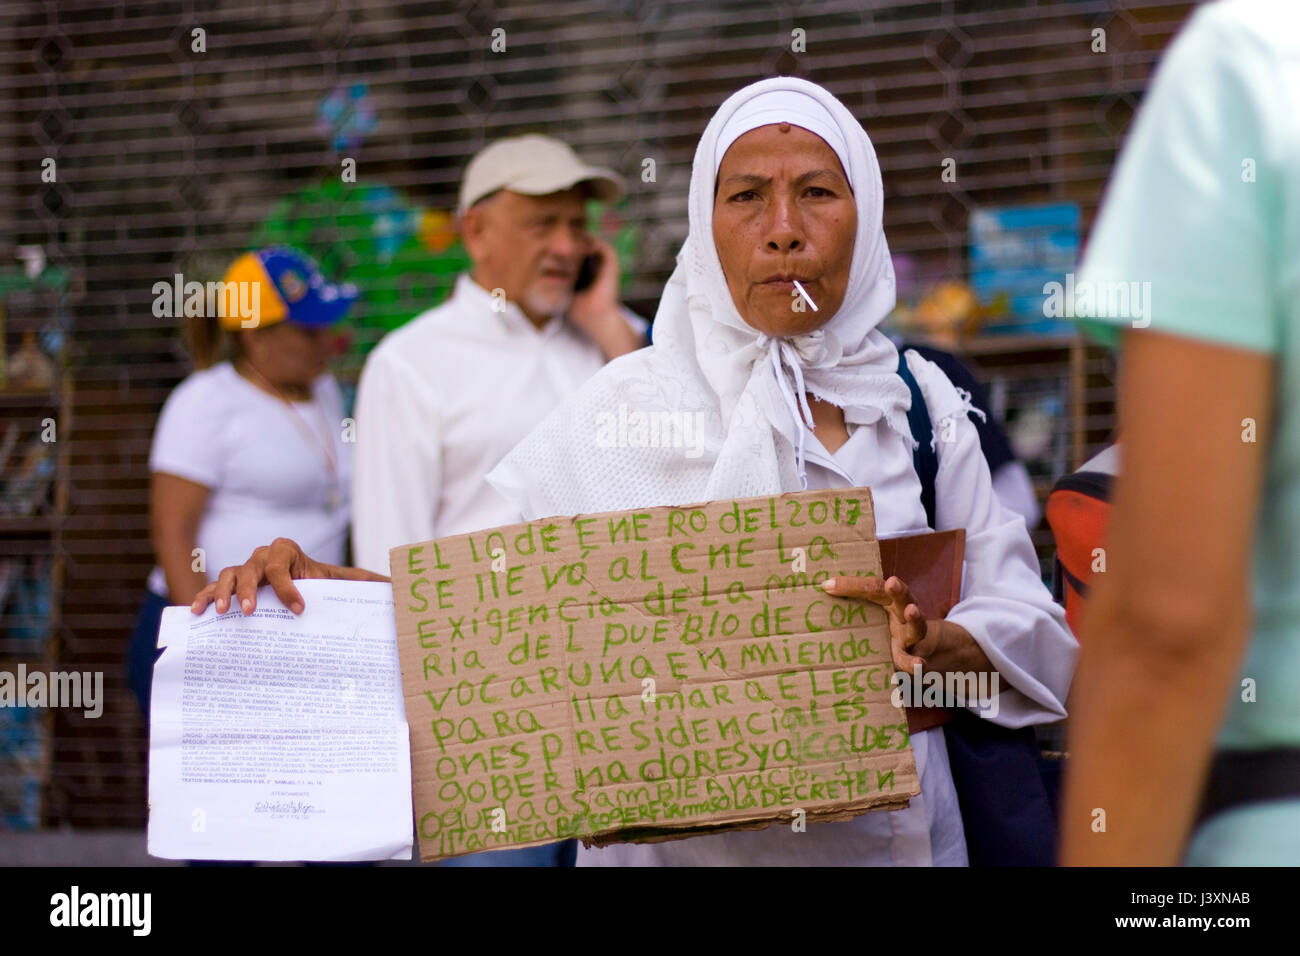 Une femme tenant un signe politique au cours d'une manifestation. Banque D'Images